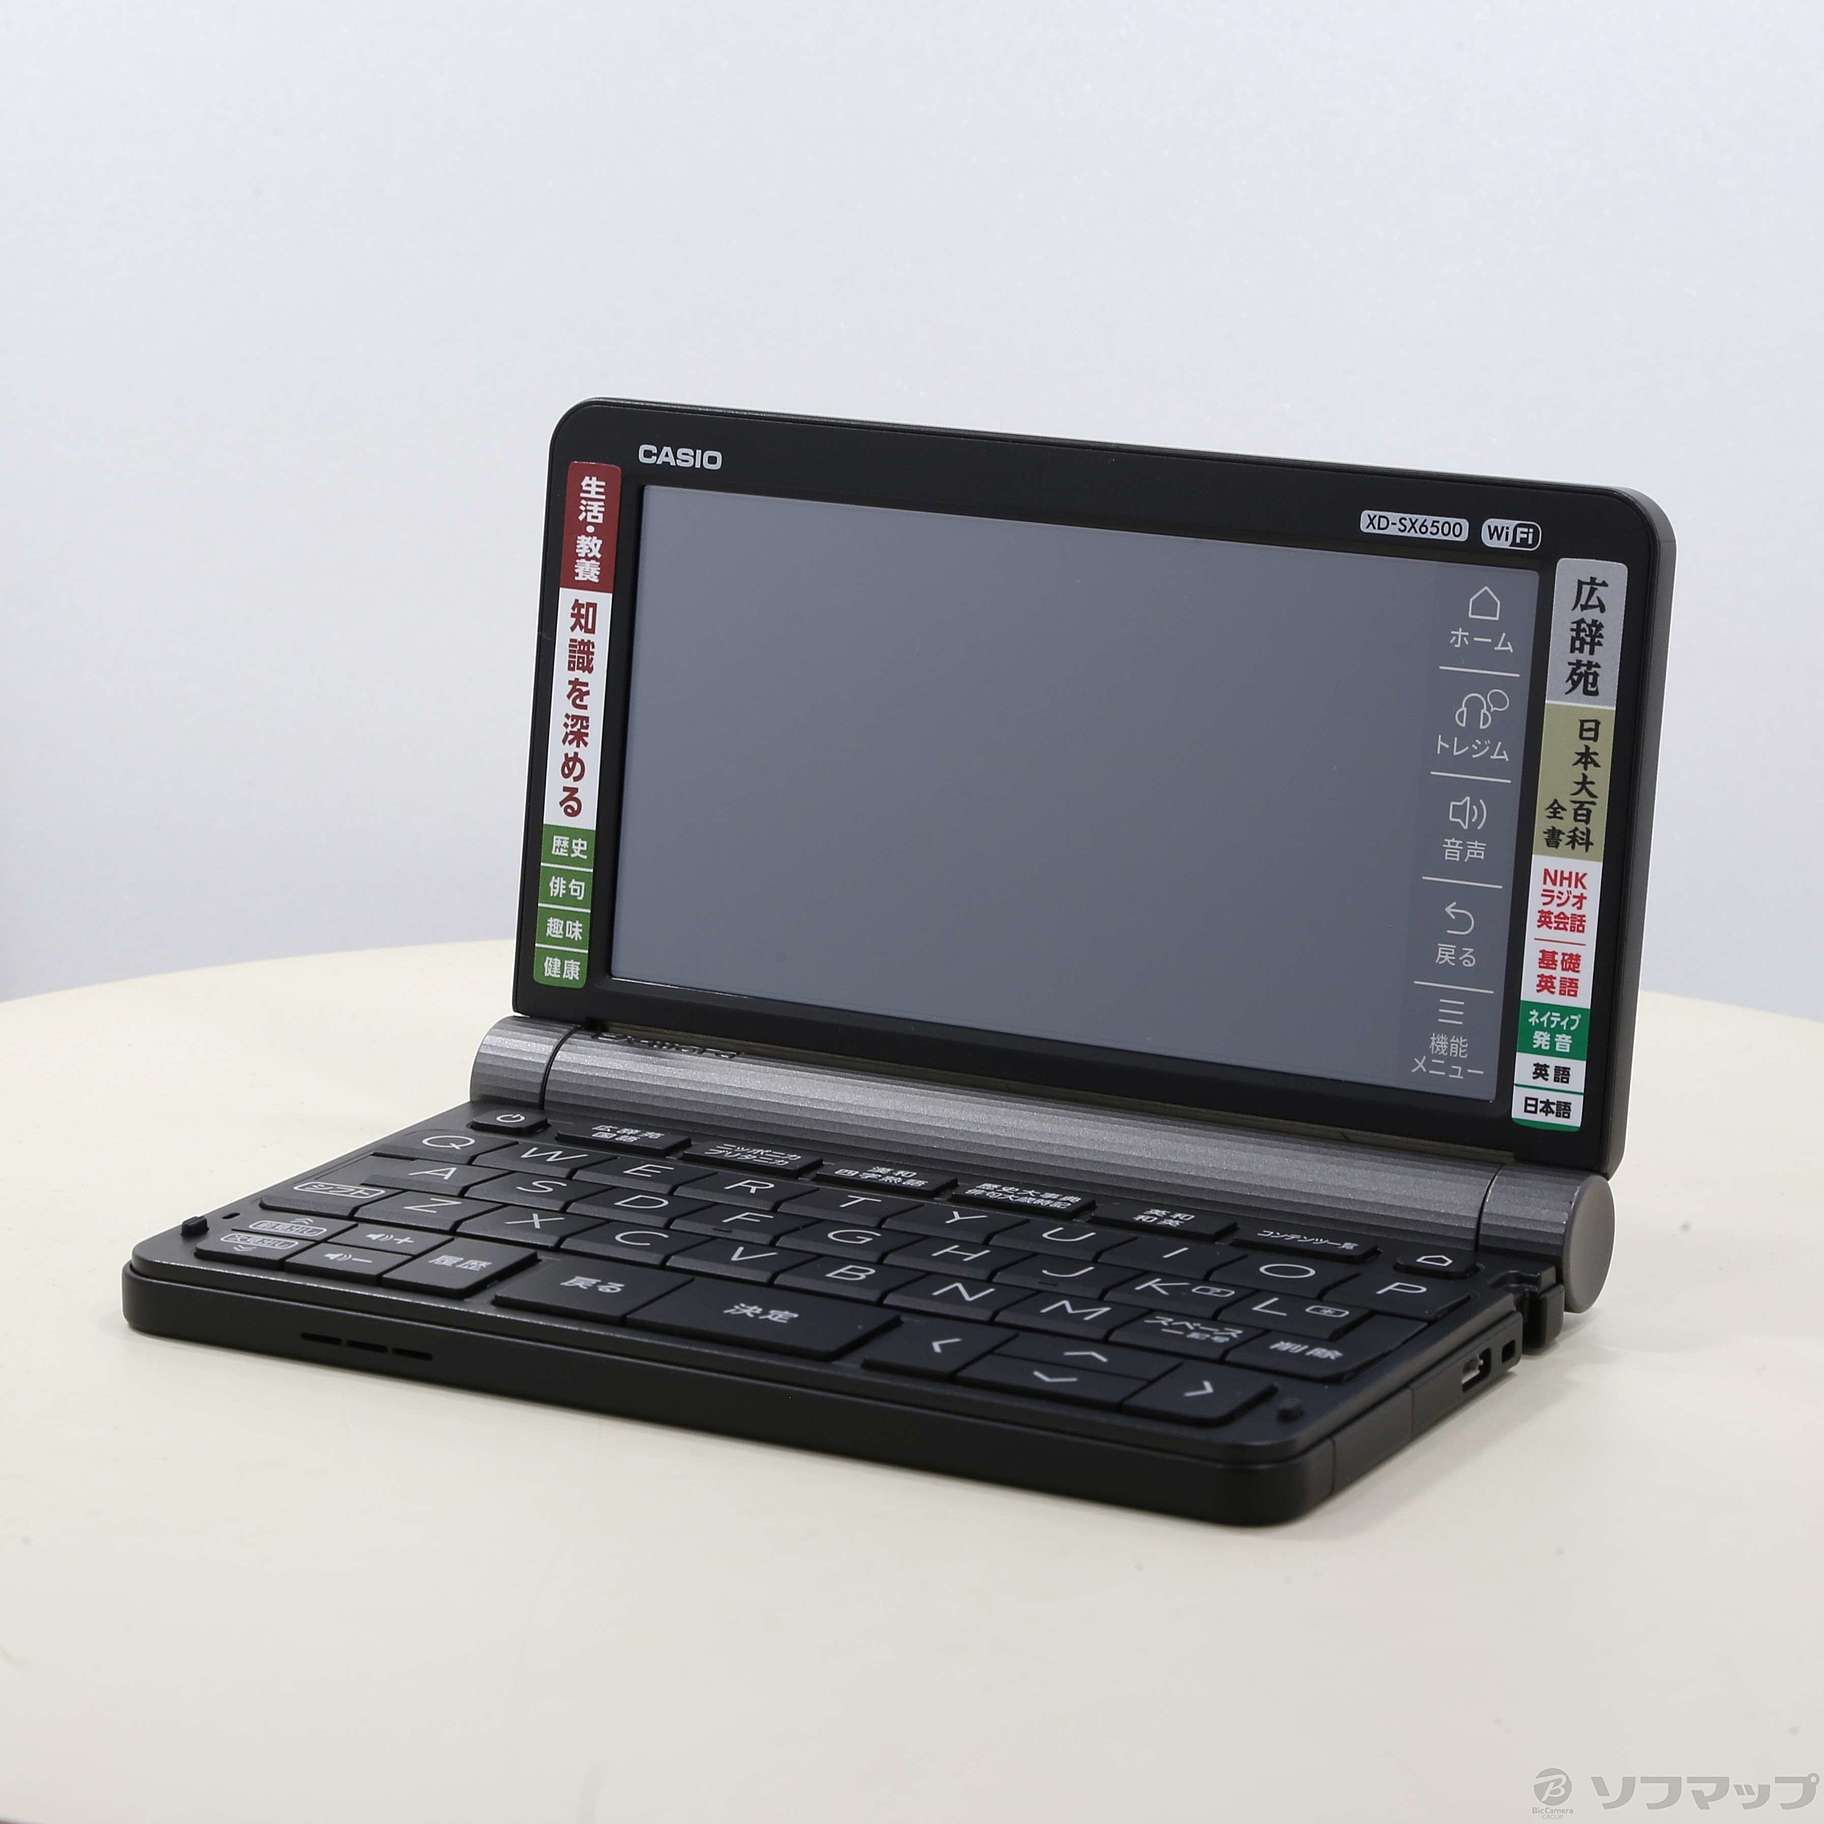 お買い得人気SALE CASIO XD-SX6500BK(ブラック) EX-word(エクスワード